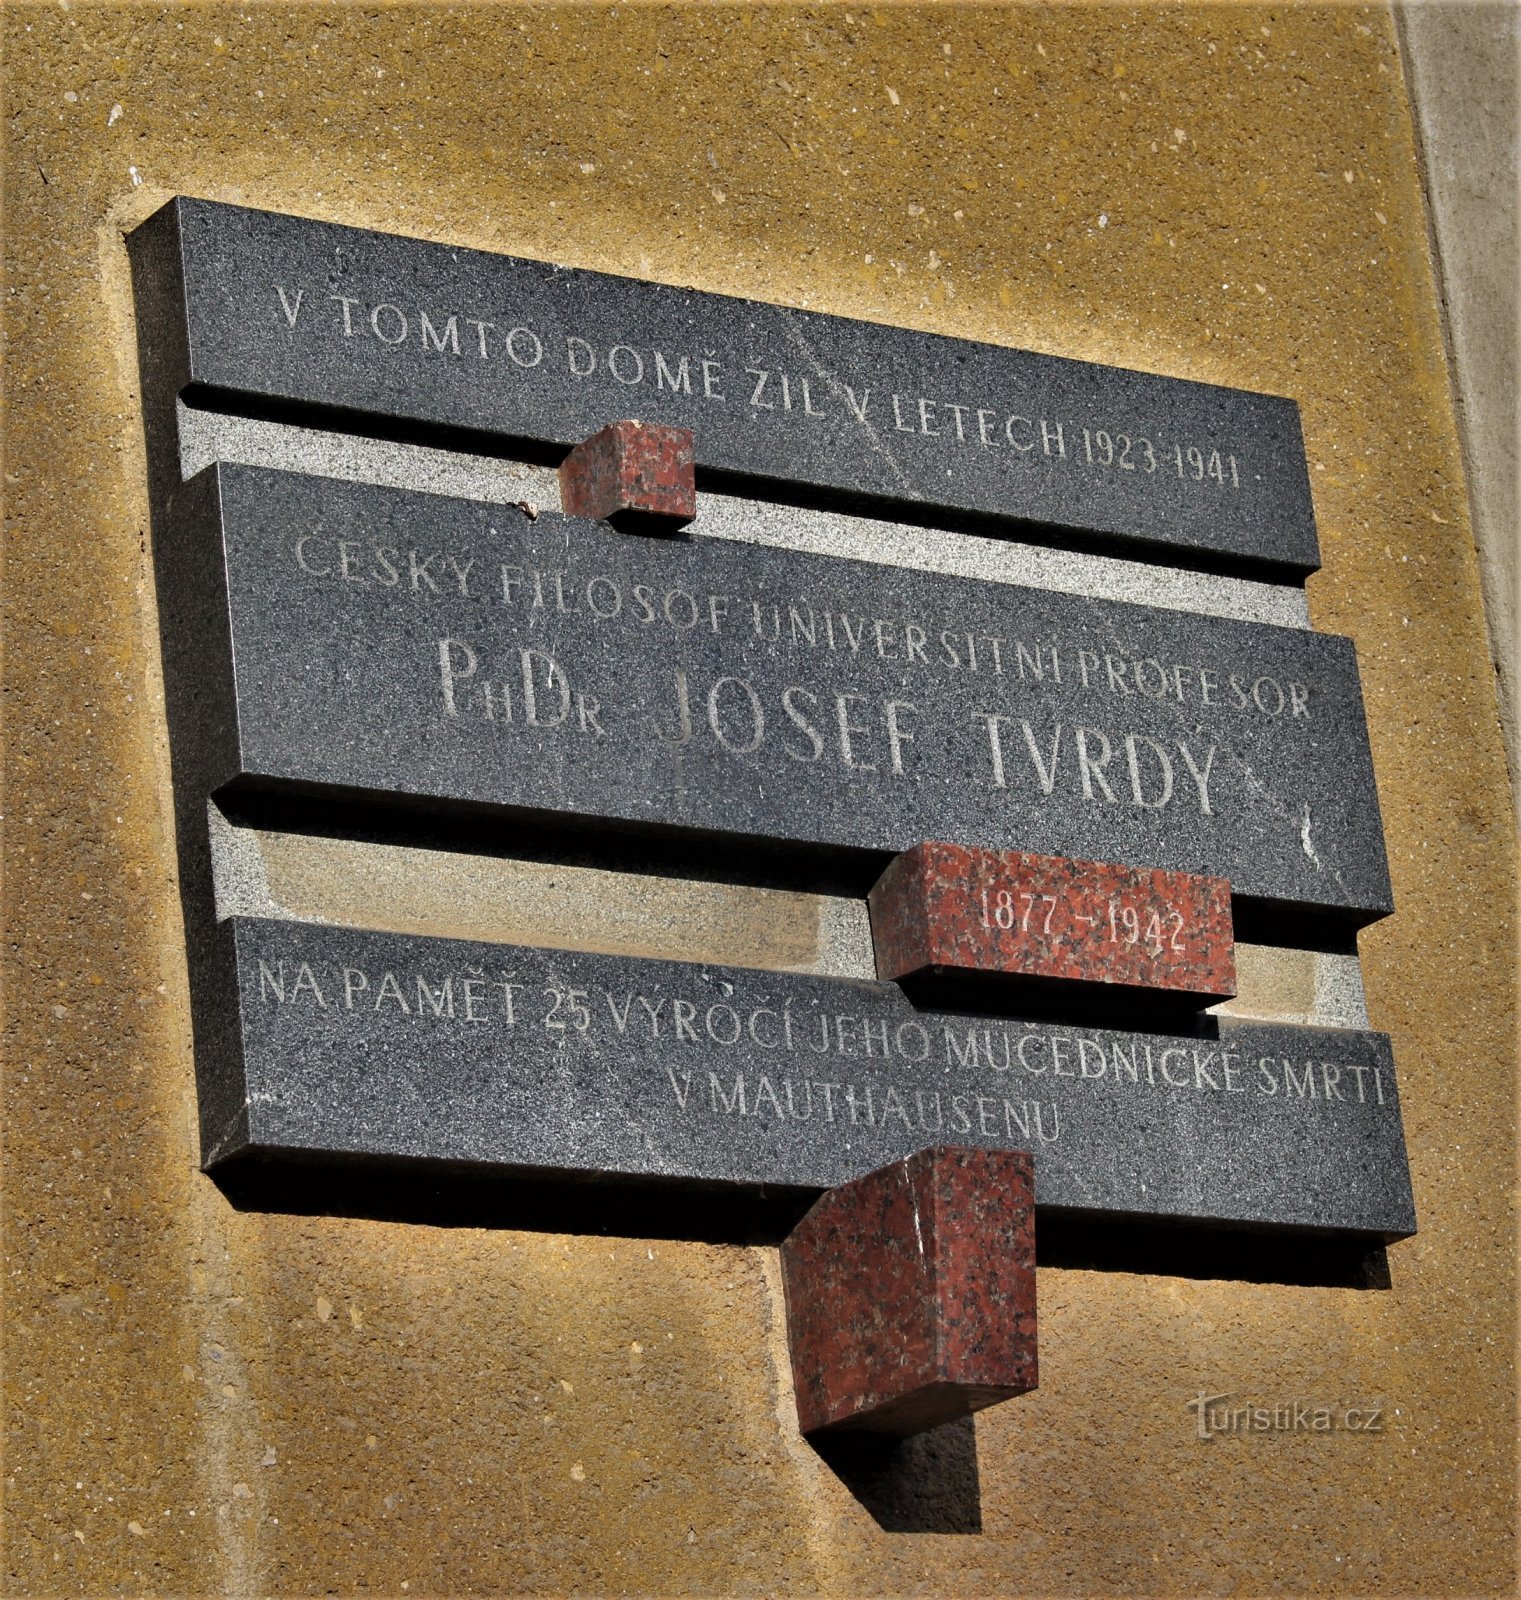 Brno - Josef Tvrdy memorial plaque